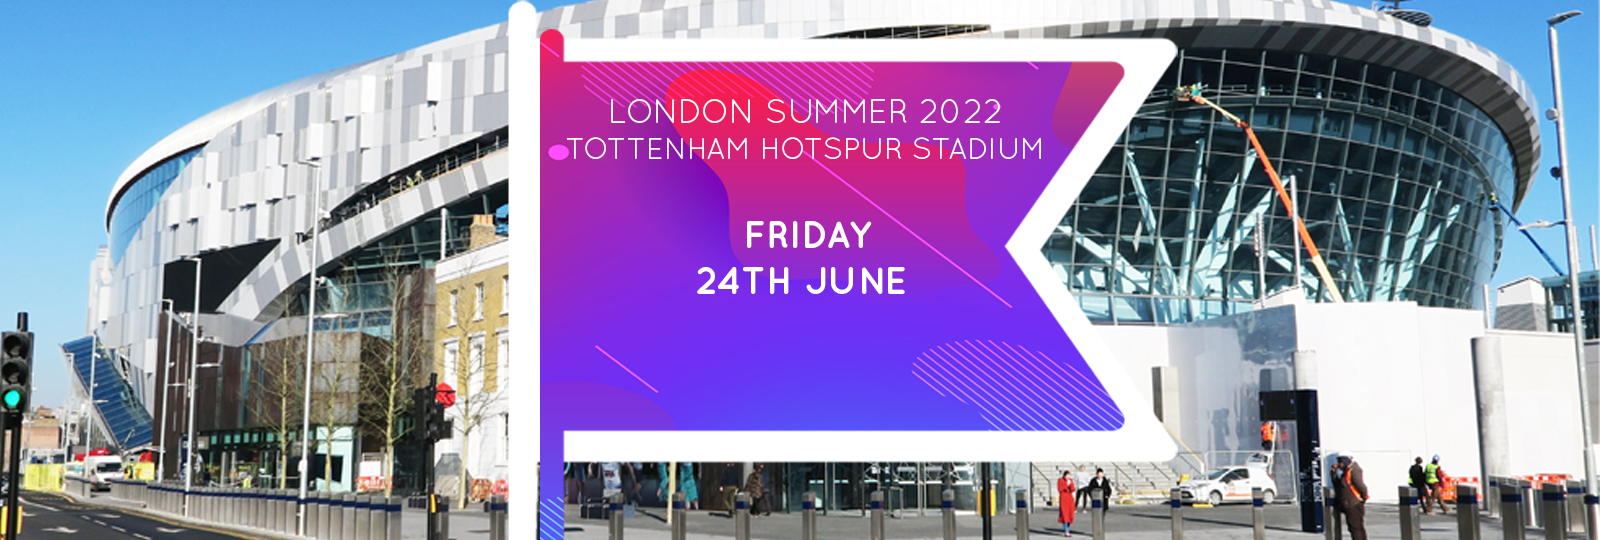 London Summer 2022 Fair